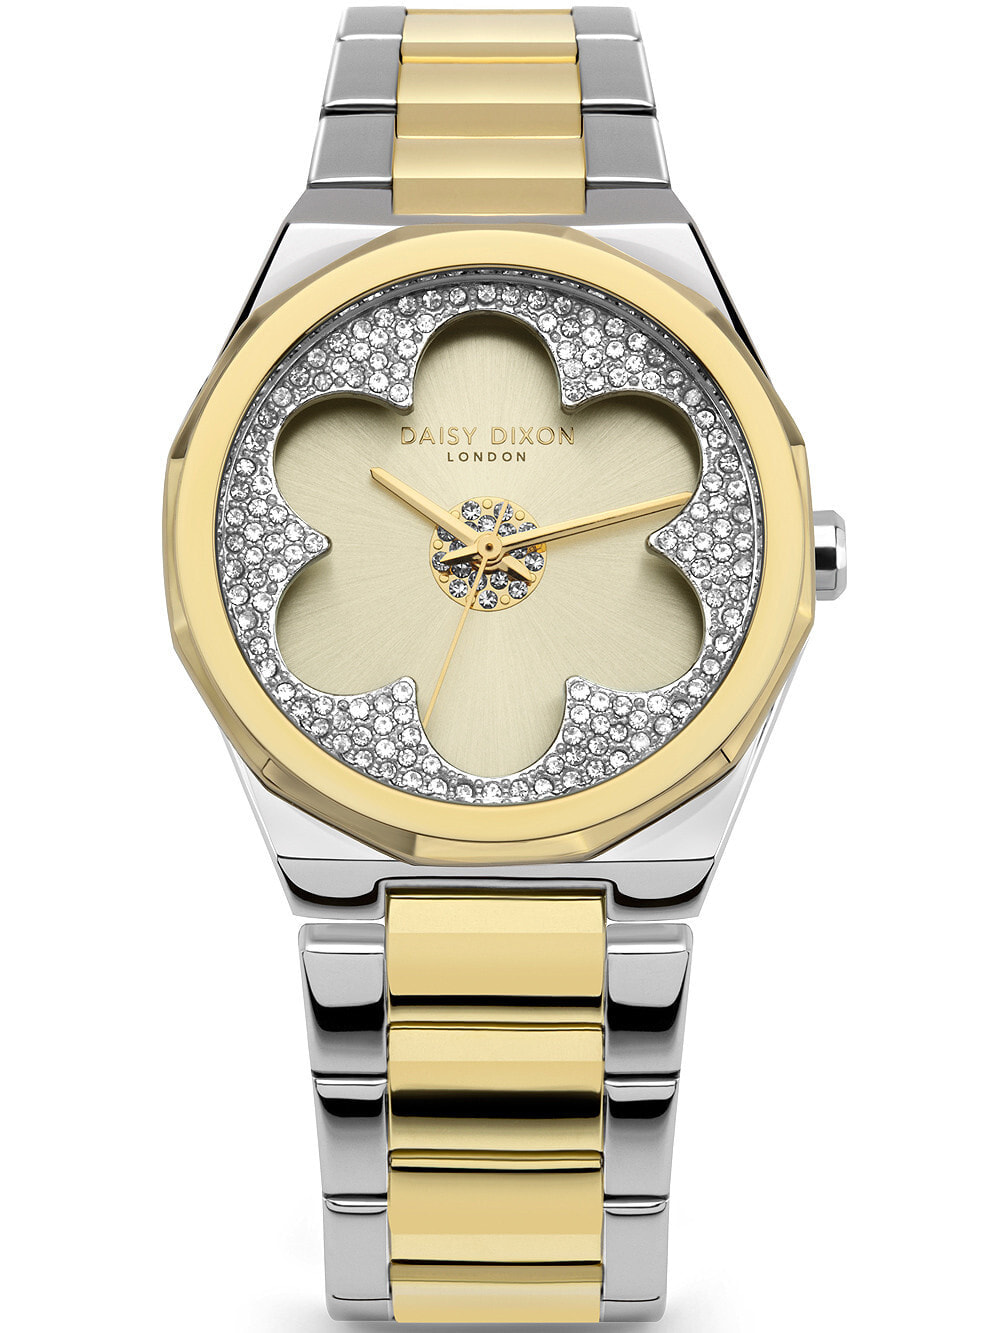 Женские наручные кварцевые часы DAISY DIXON циферблат декорирован цветком из страз, ремешок из нержавеющей стали. Водонепроницаемость-3 АТМ. Прочное, минеральное стекло.